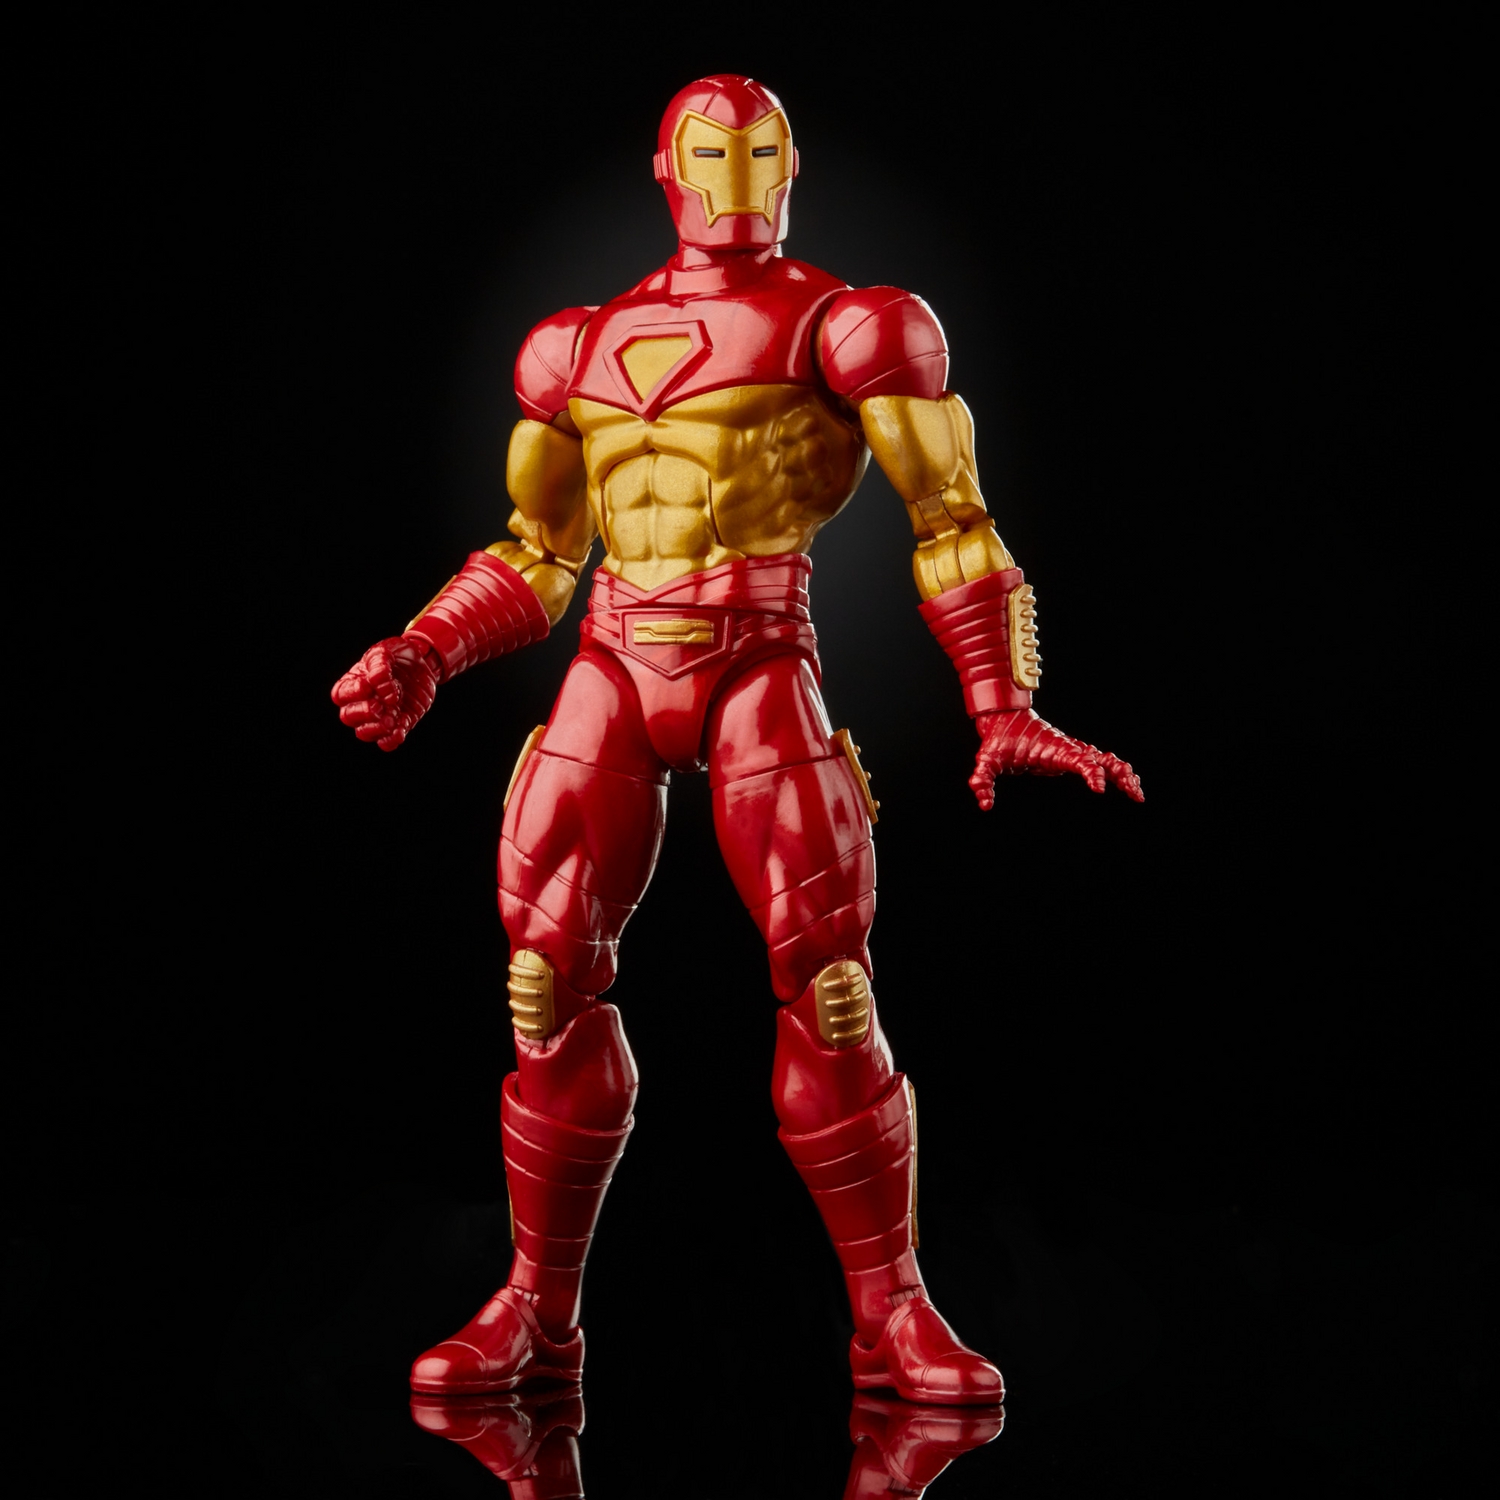 MARVEL LEGENDS SERIES 6-INCH IRON MAN Figure Assortment - Modular Iron Man - oop (6).jpg